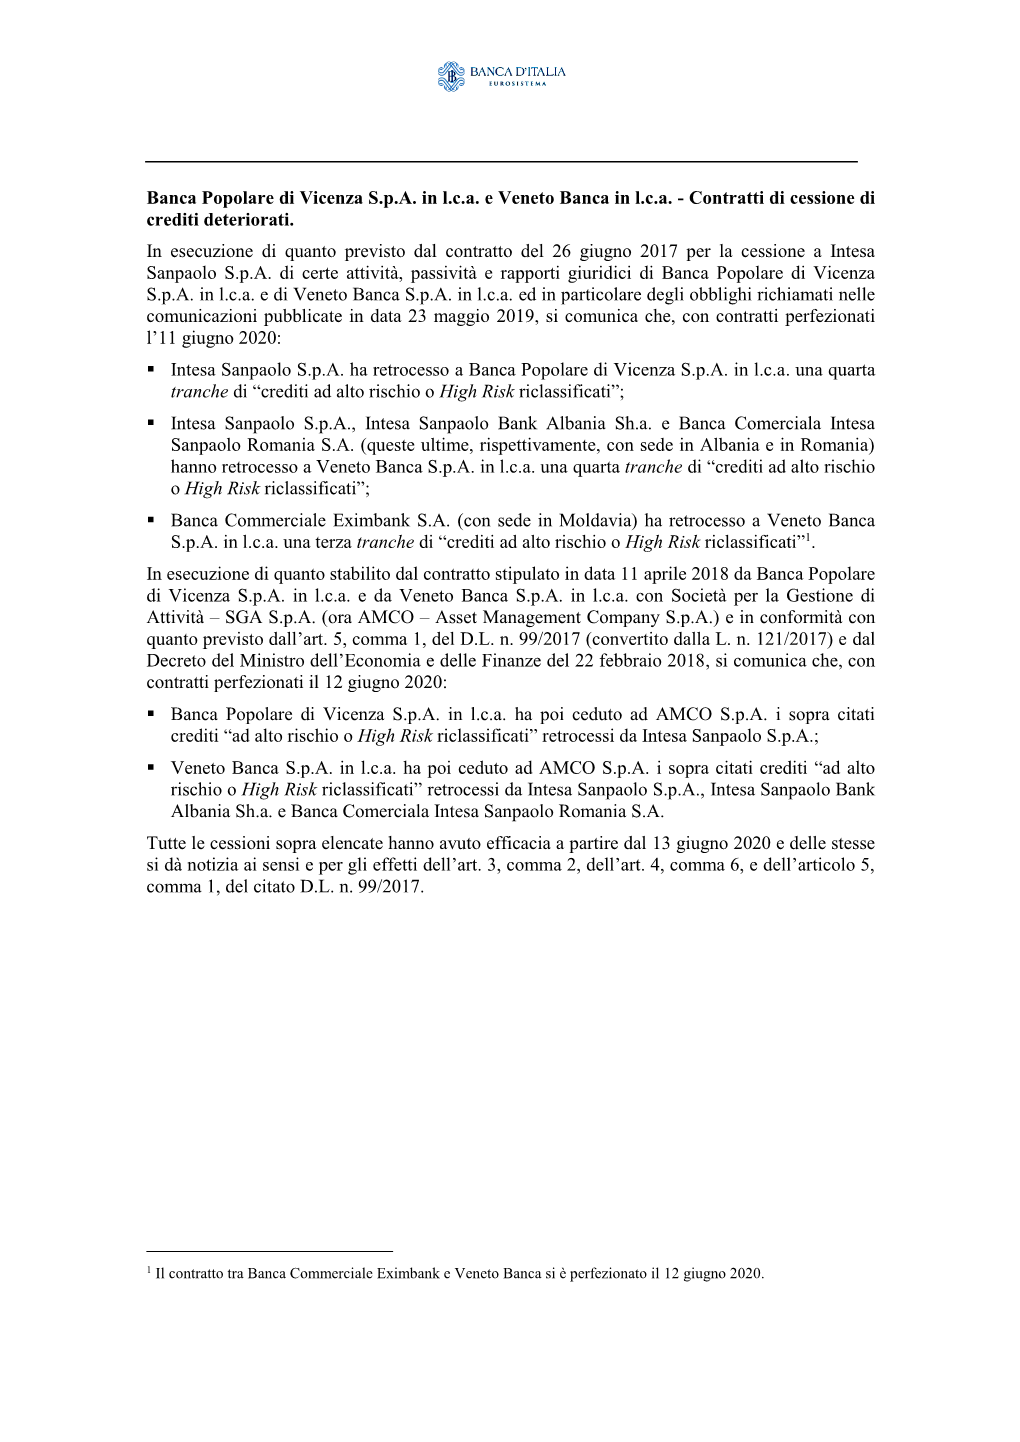 Banca Popolare Di Vicenza S.P.A. in L.C.A. E Veneto Banca in L.C.A. - Contratti Di Cessione Di Crediti Deteriorati